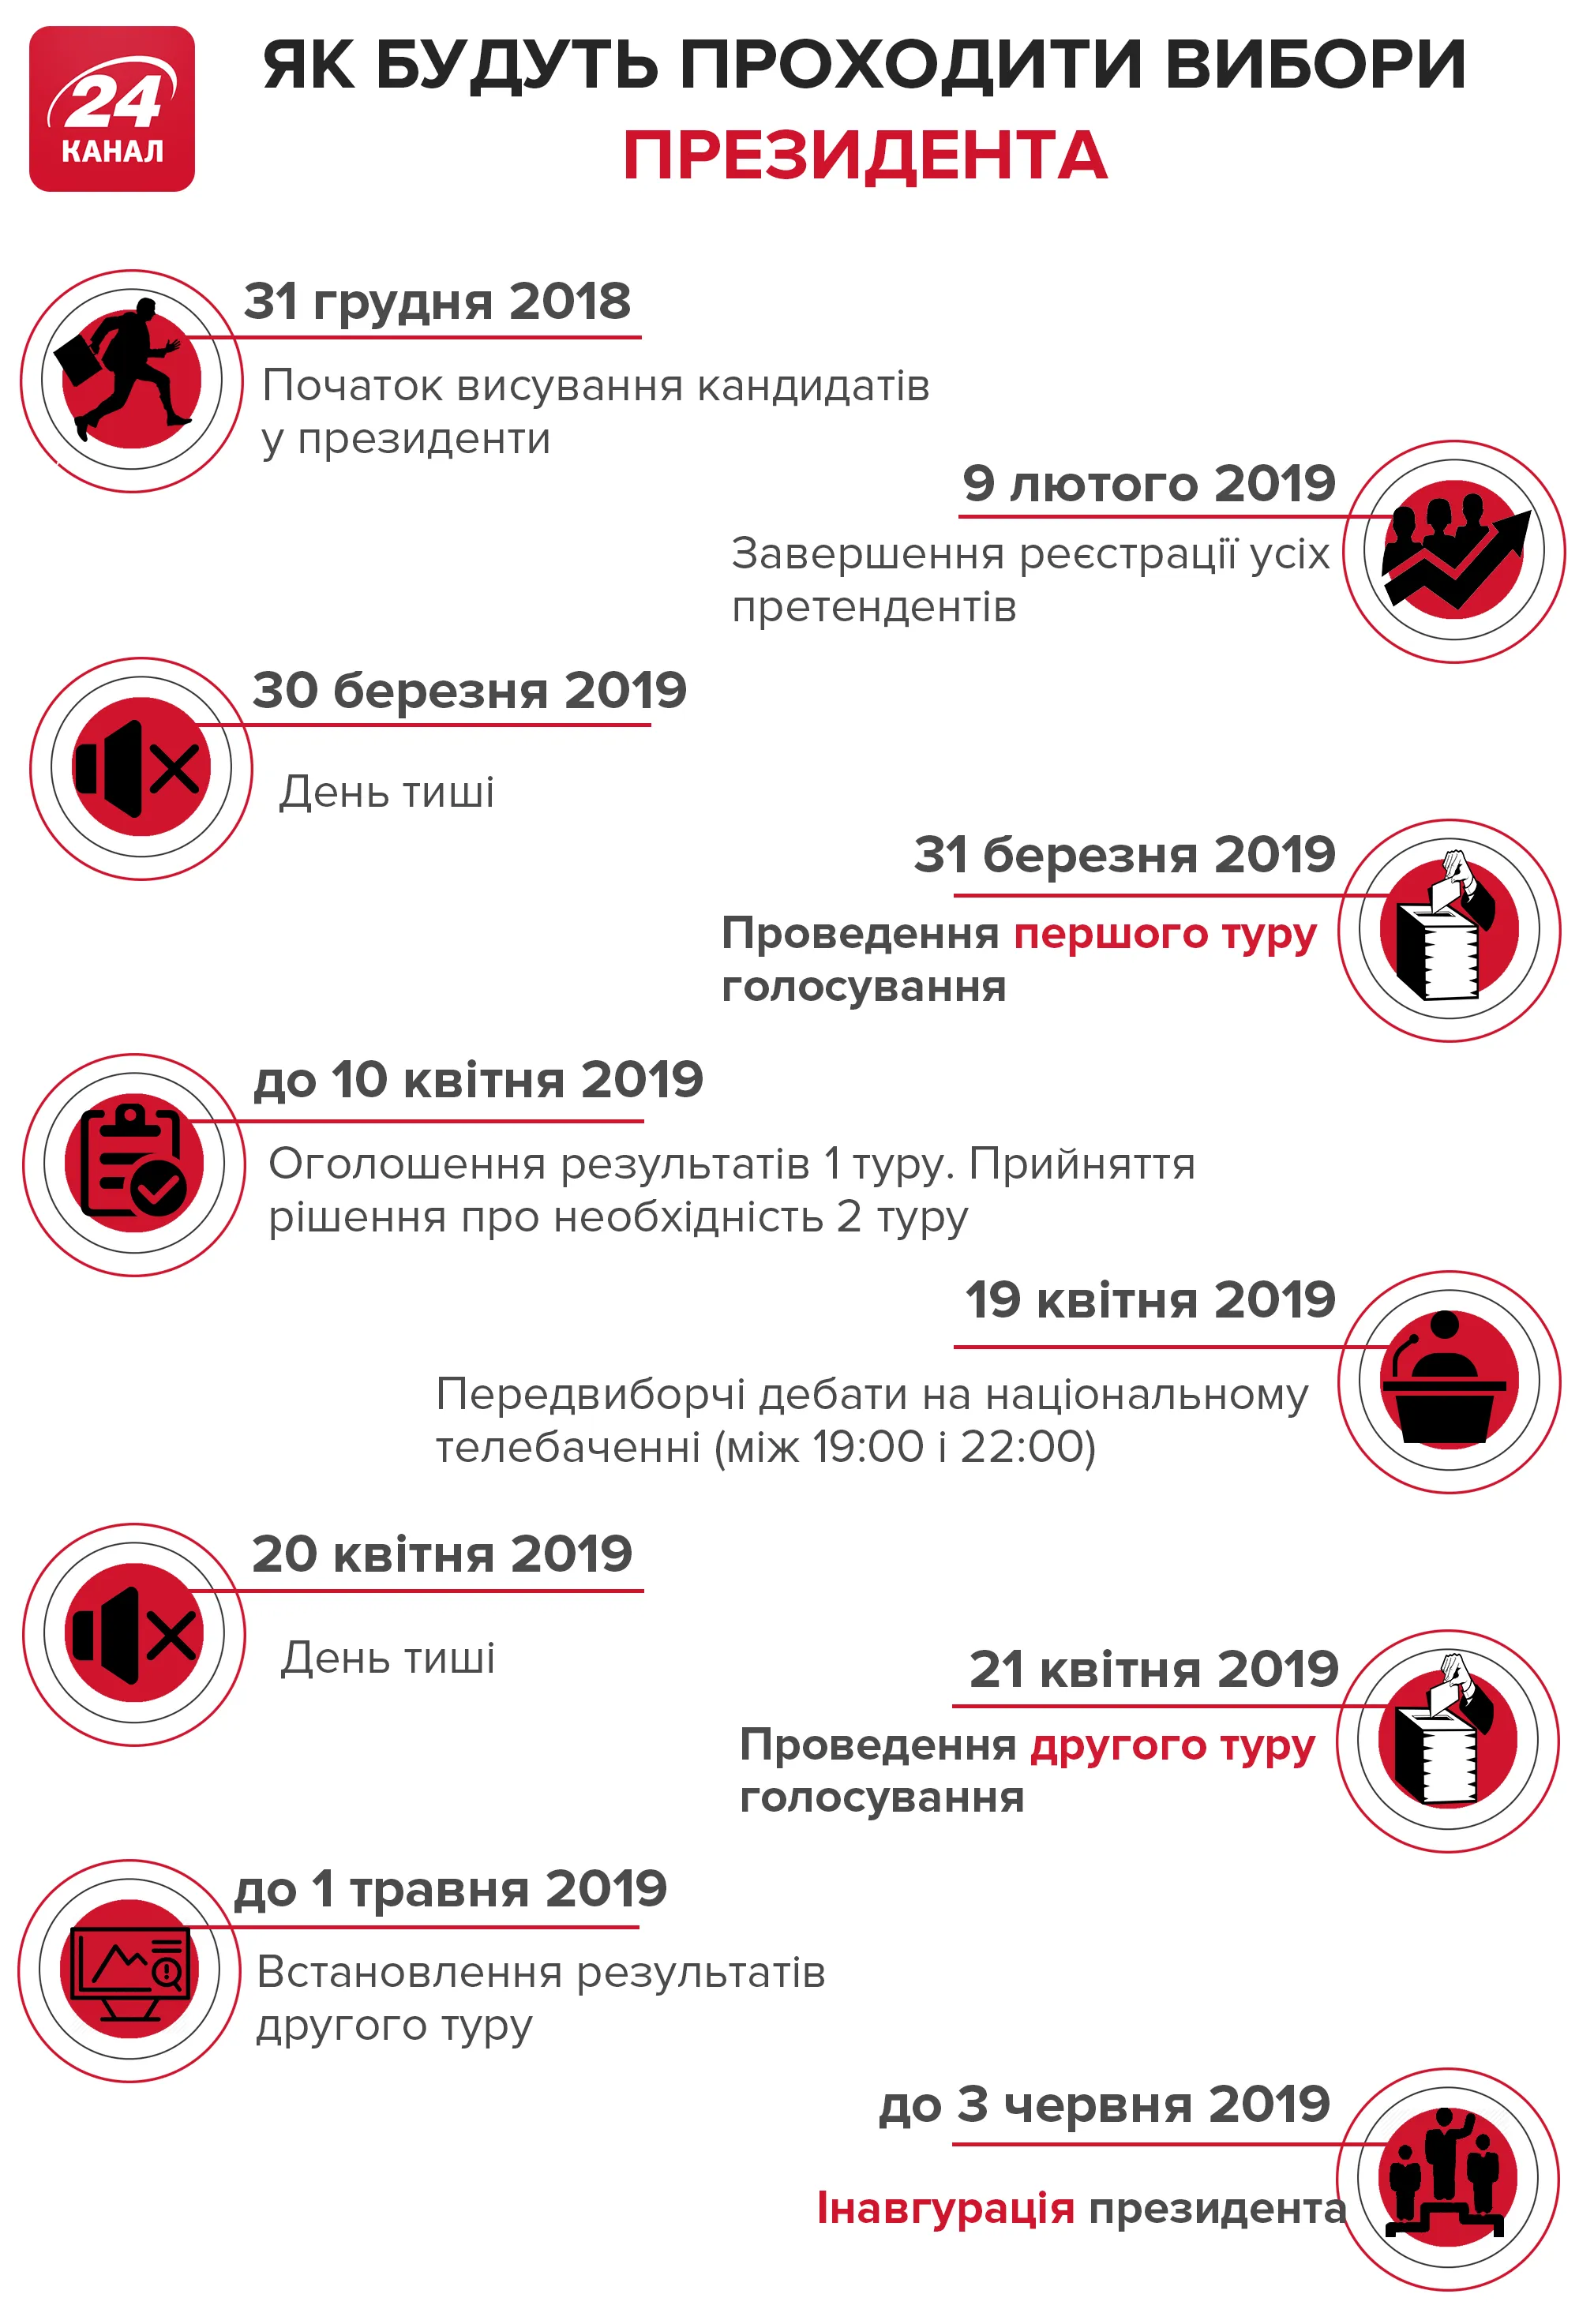 вибори президента України 2019 